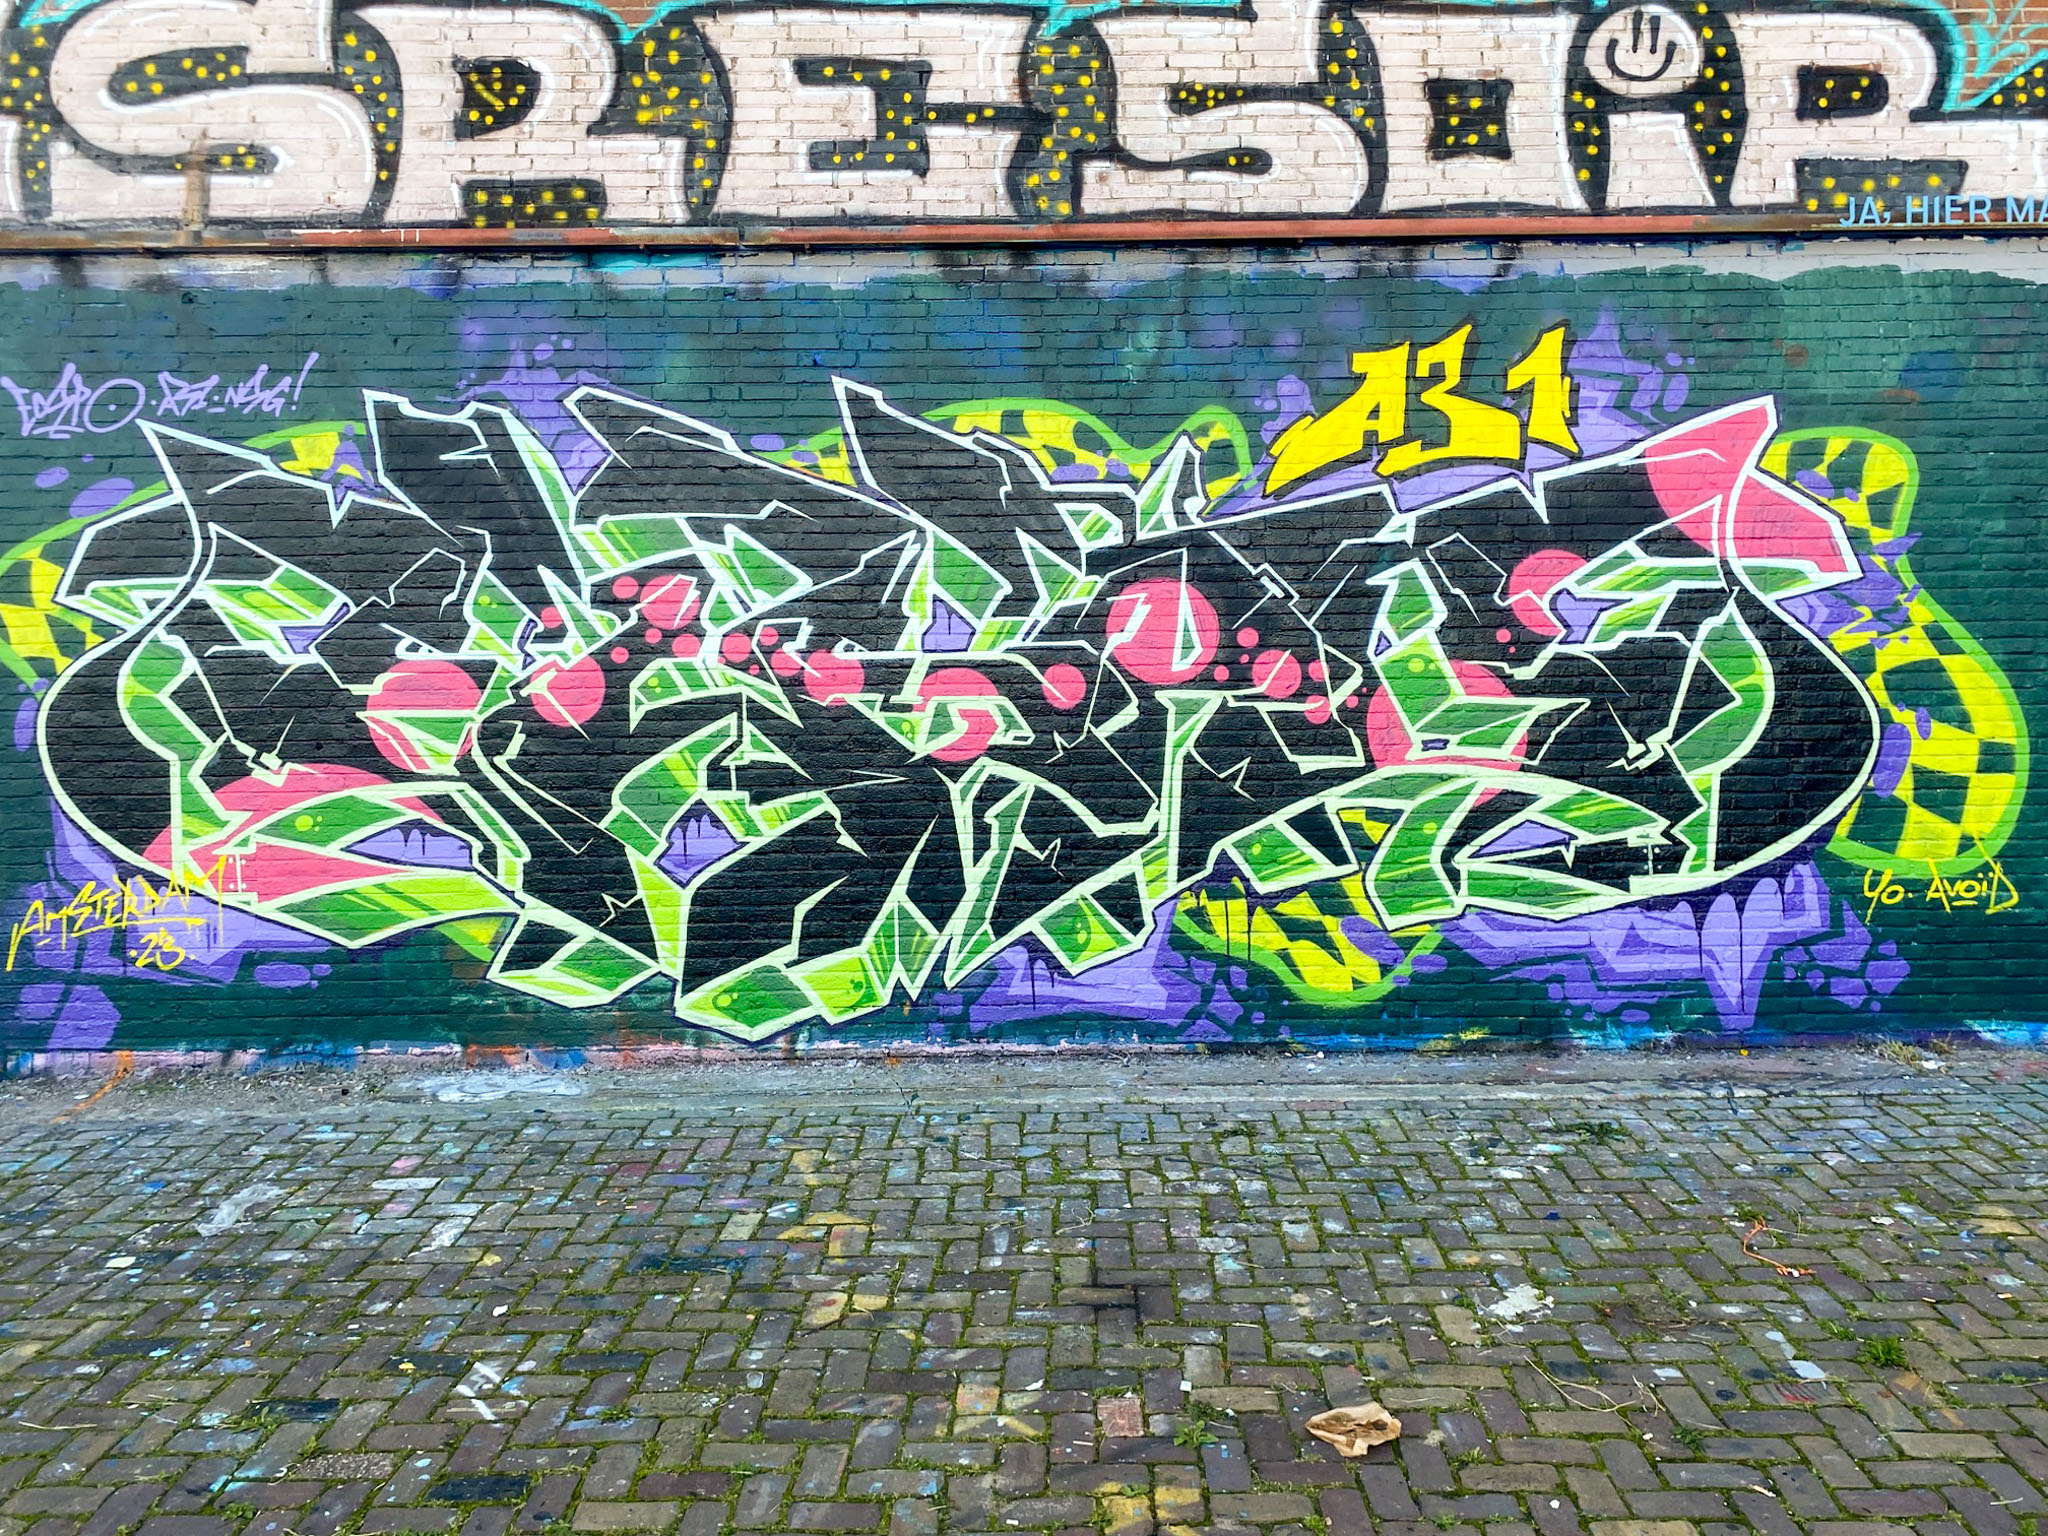 ndsm, straat, ecspo, graffiti